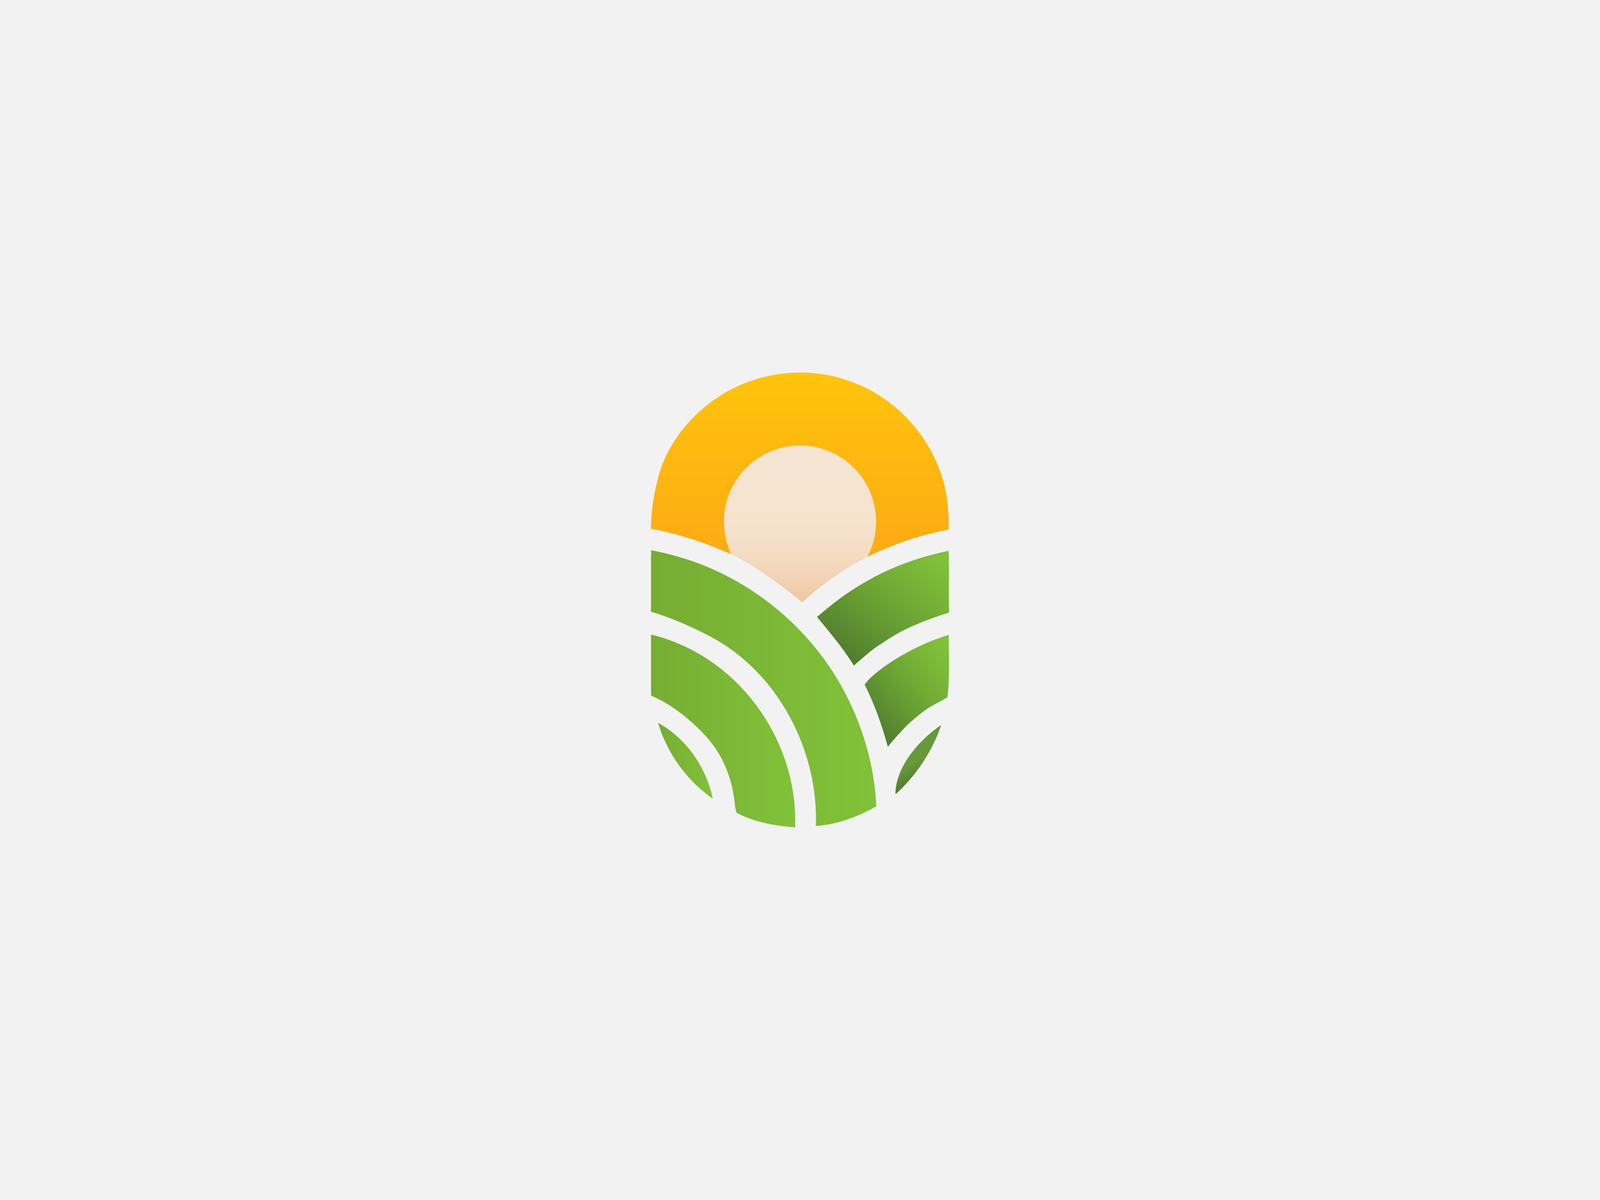 SeedWise logo by Augustus Rivers Brightman